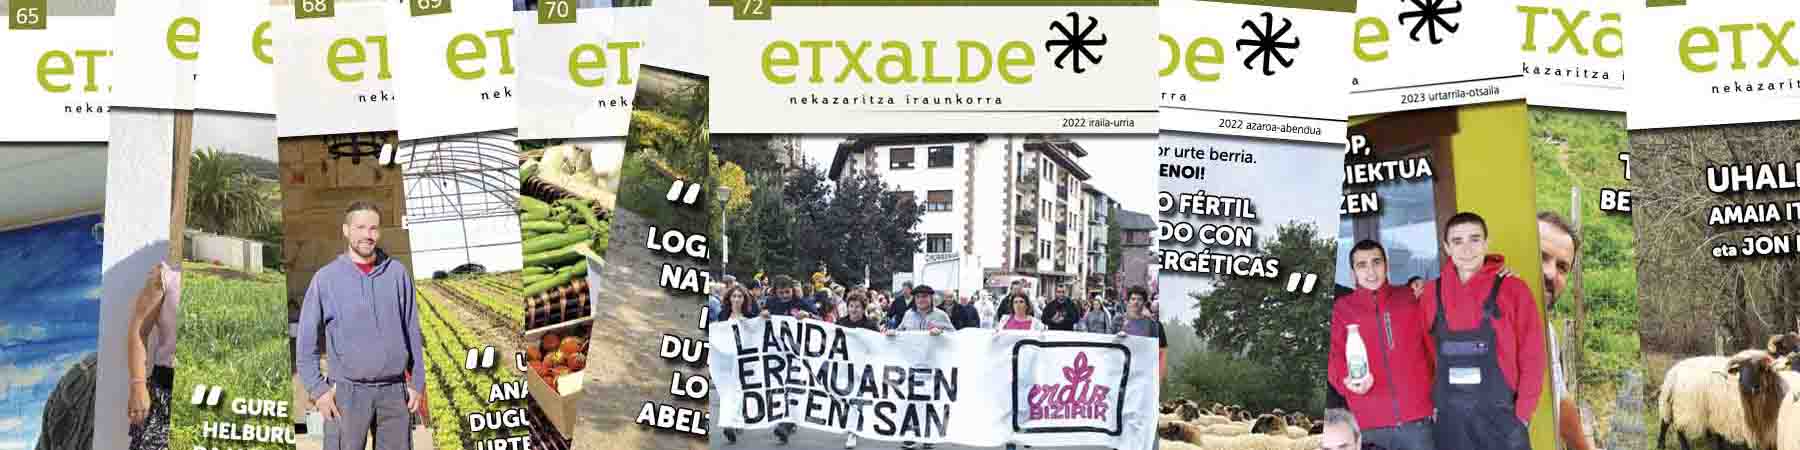 etxalde aldizkariak